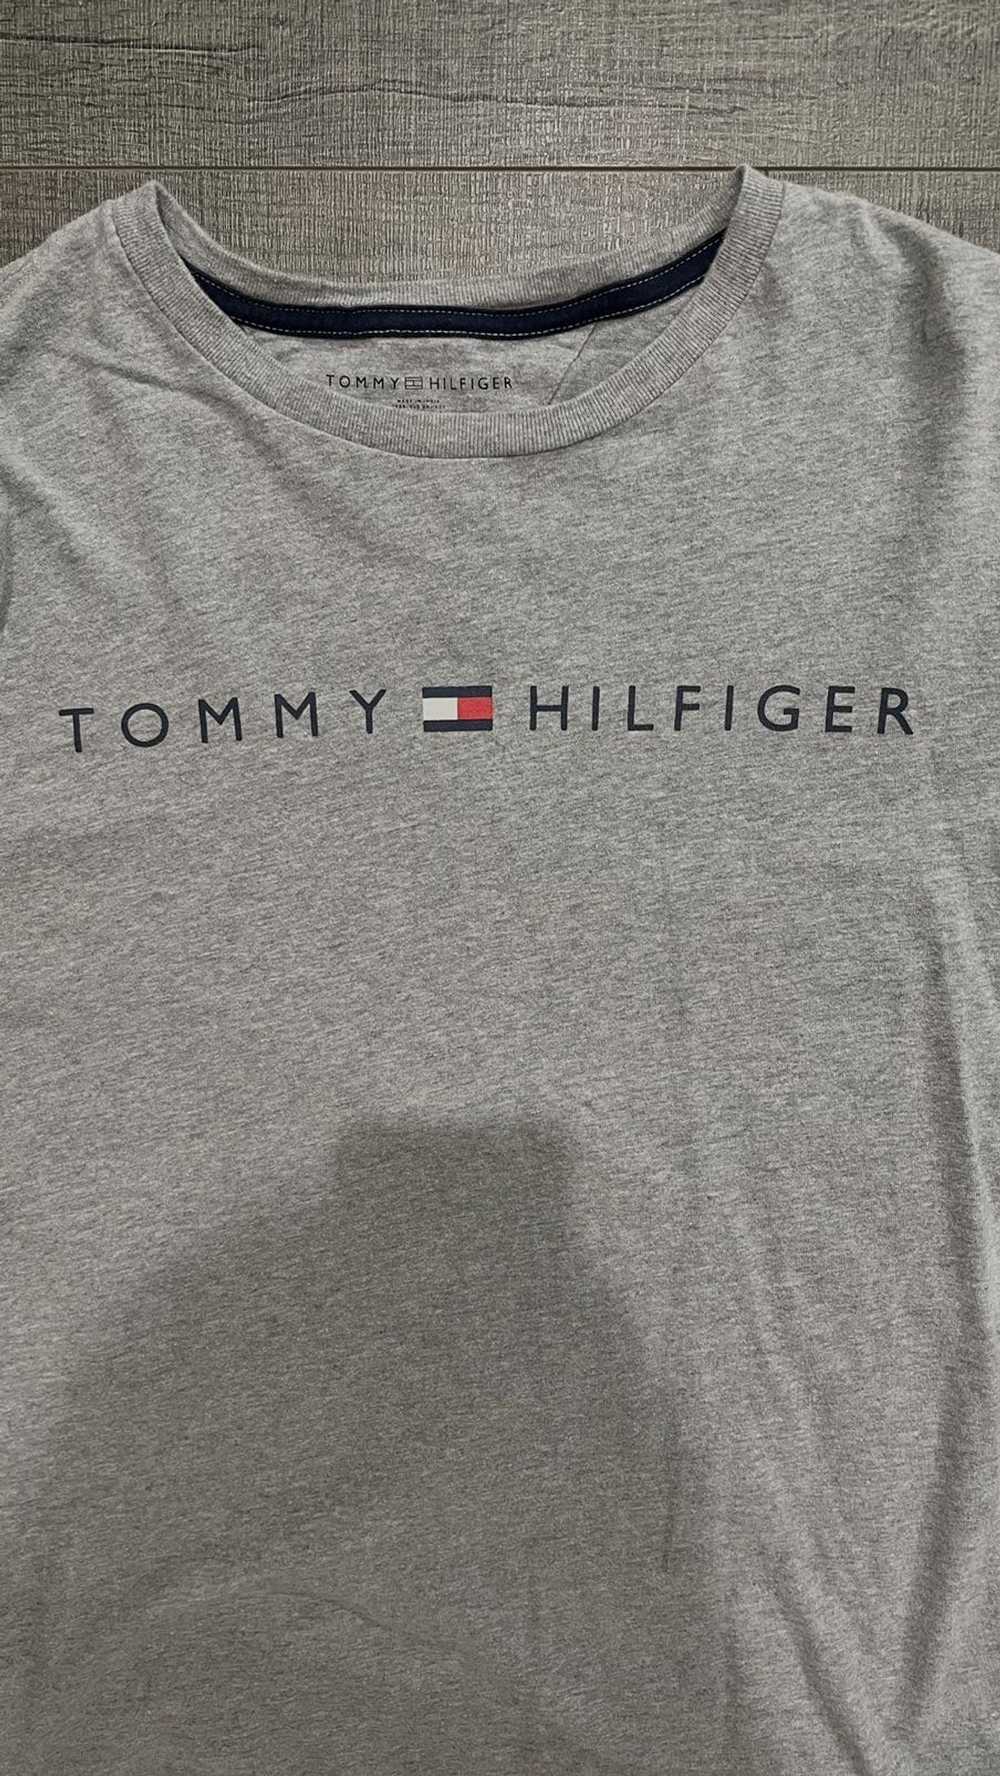 Tommy Hilfiger Tommy Hilfiger Long Sleeve - image 2